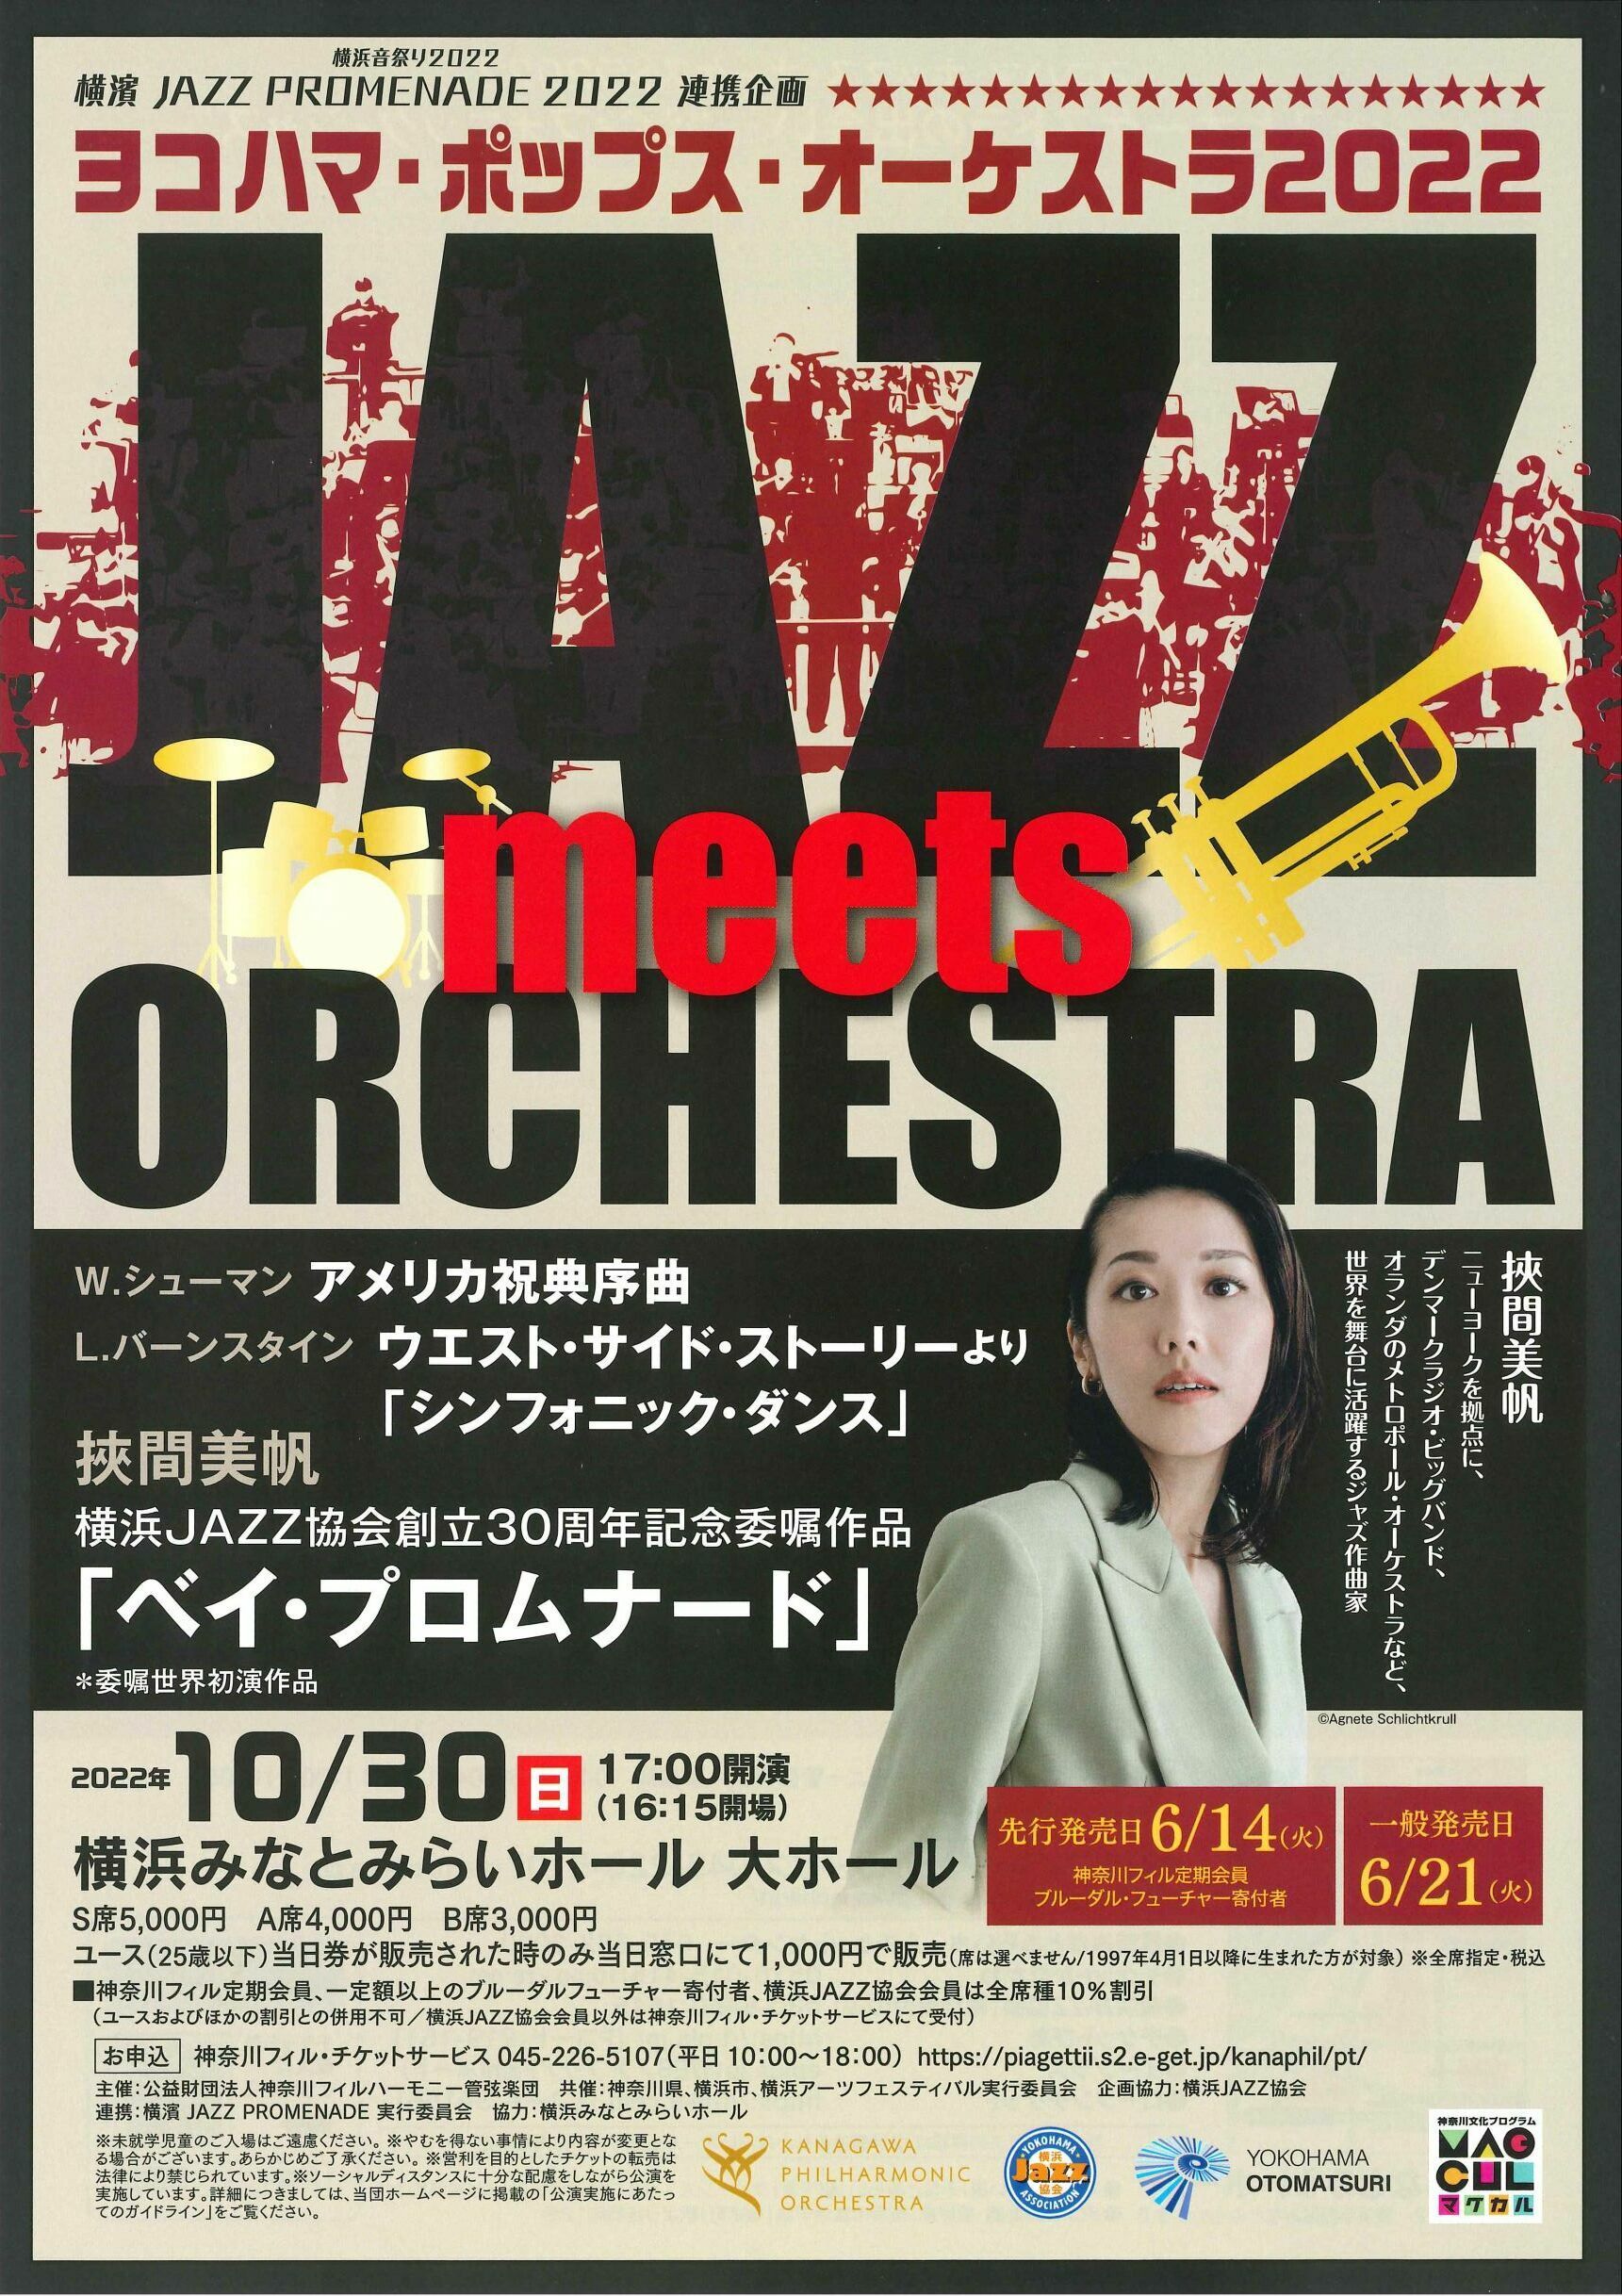 ＜横浜音祭り2022＞　
横濱 JAZZ PROMENADE 2022 連携企画　
シンフォニック・ジャズのコンサート　
JAZZ meets ORCHESTRA　
ヨコハマ・ポップス・オーケストラ2022